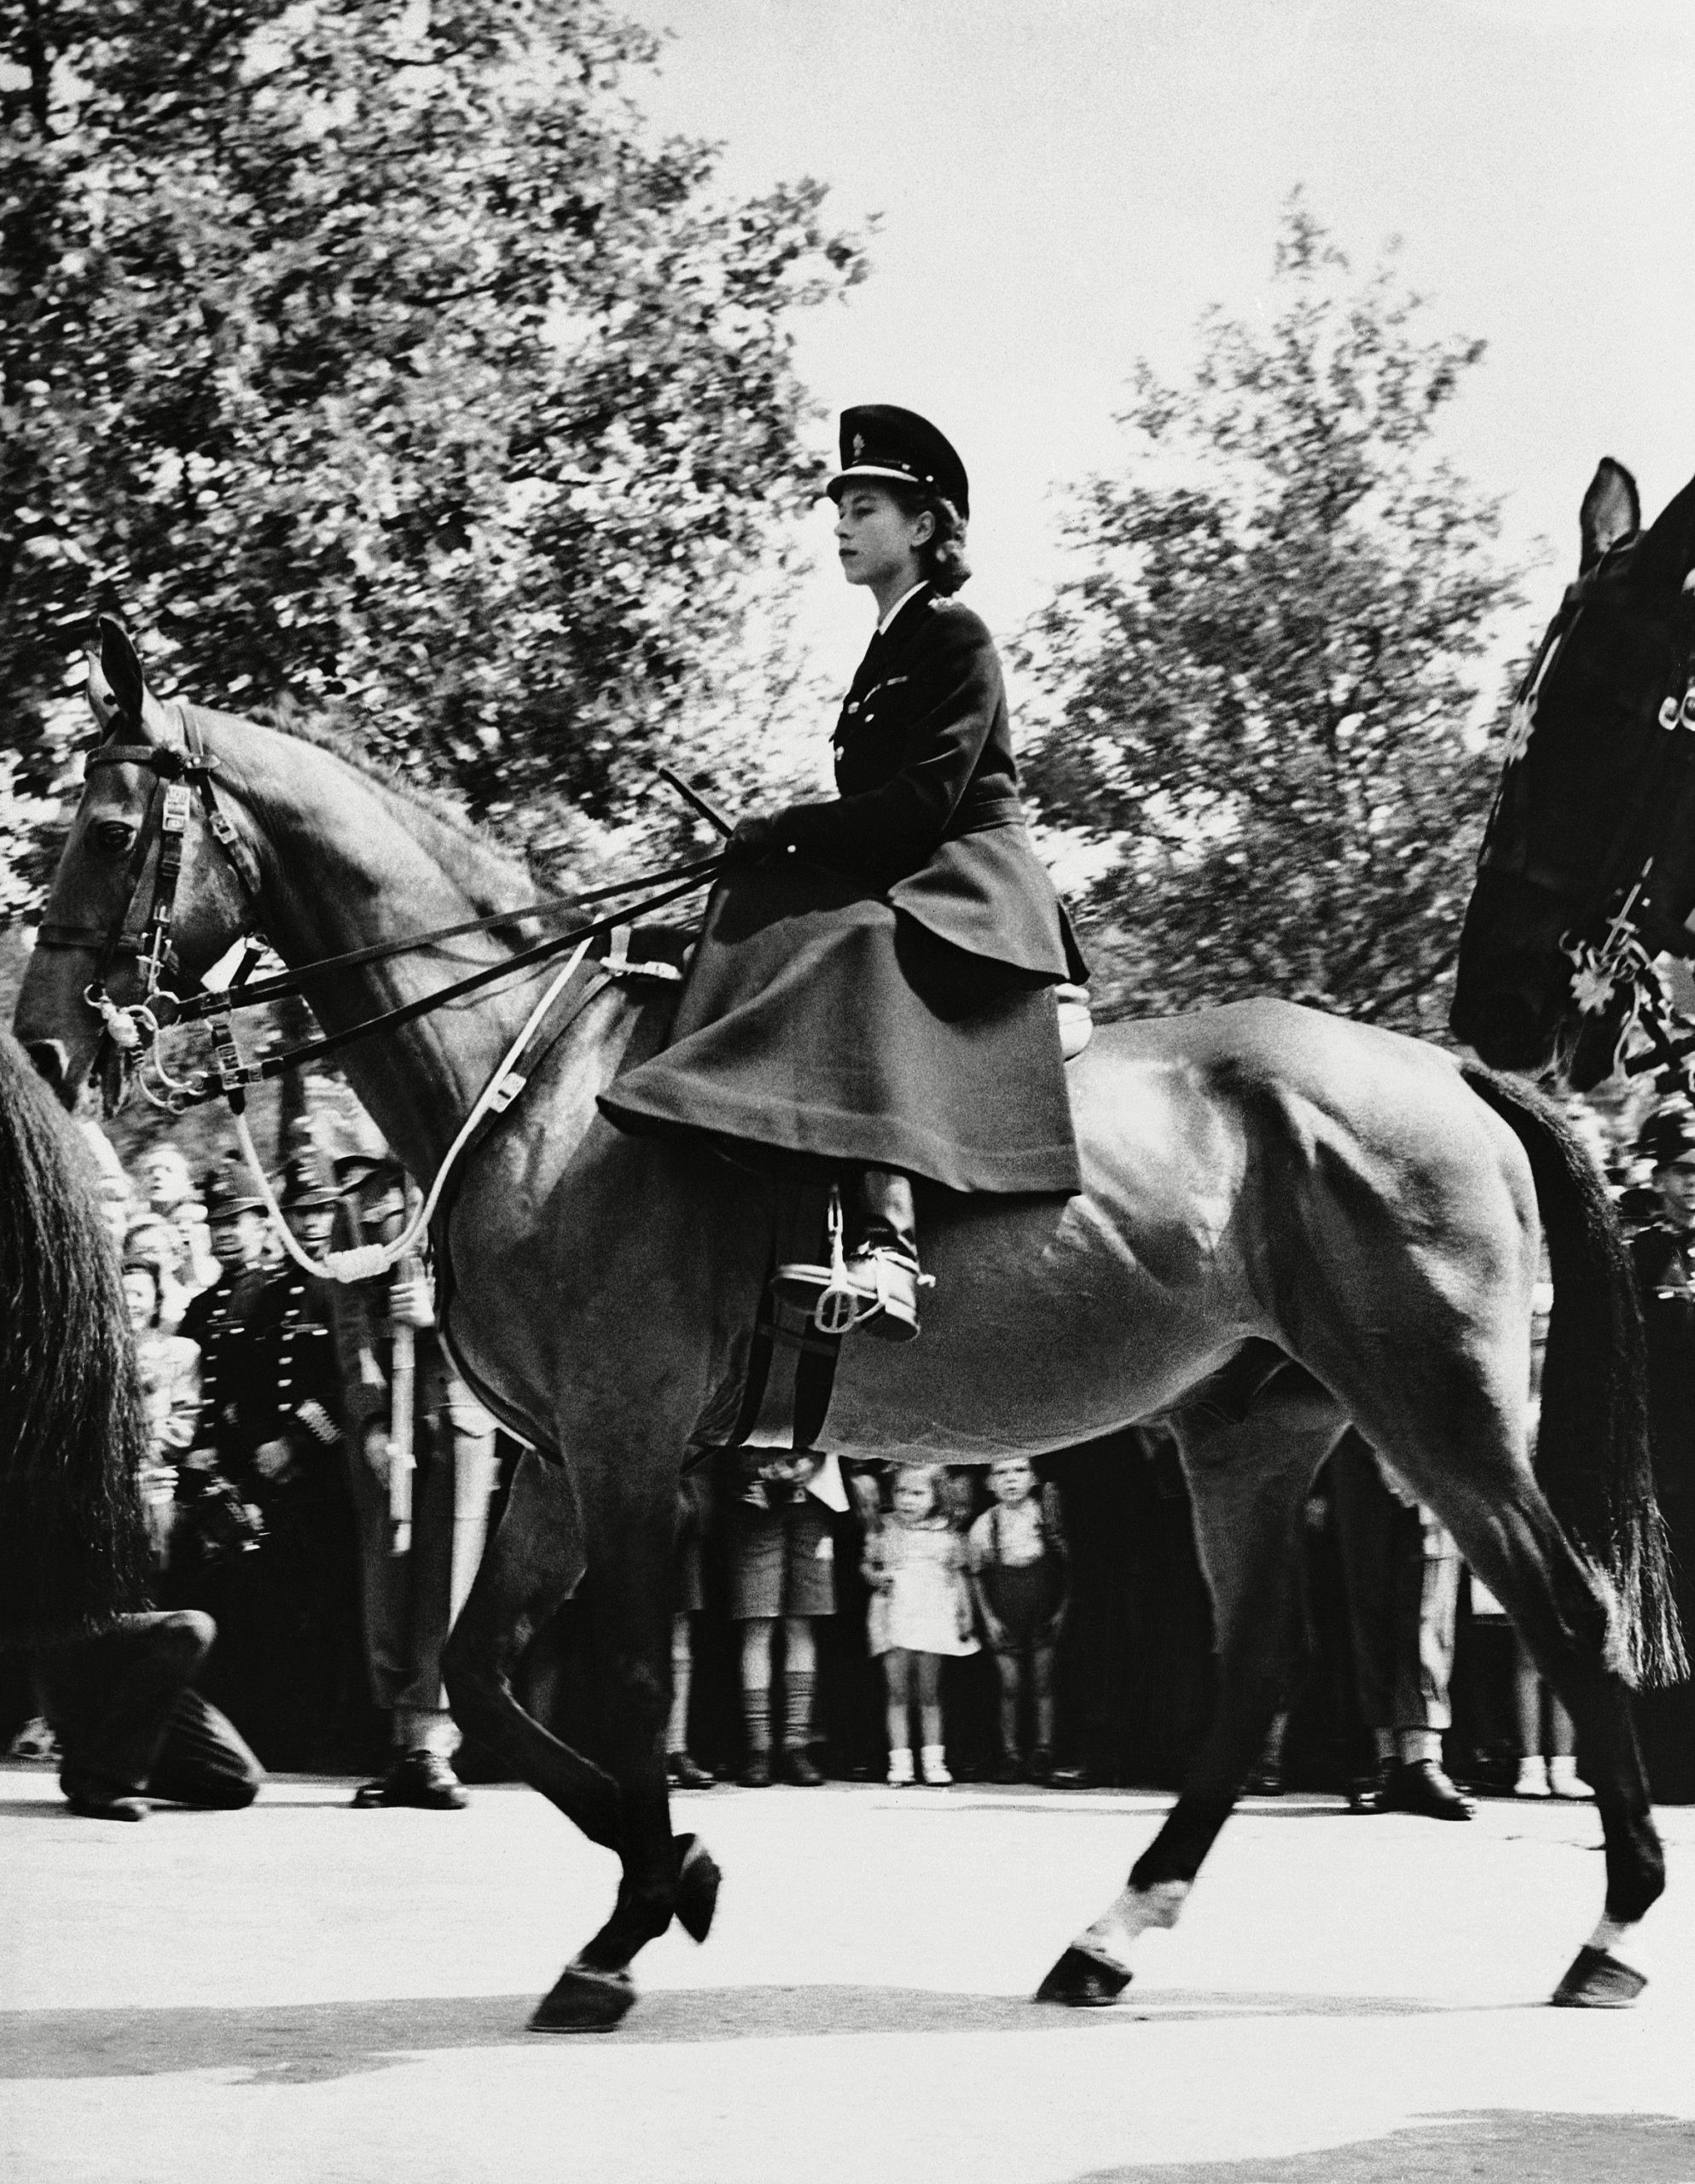 Princess Elizabeth in her first appearance on horseback